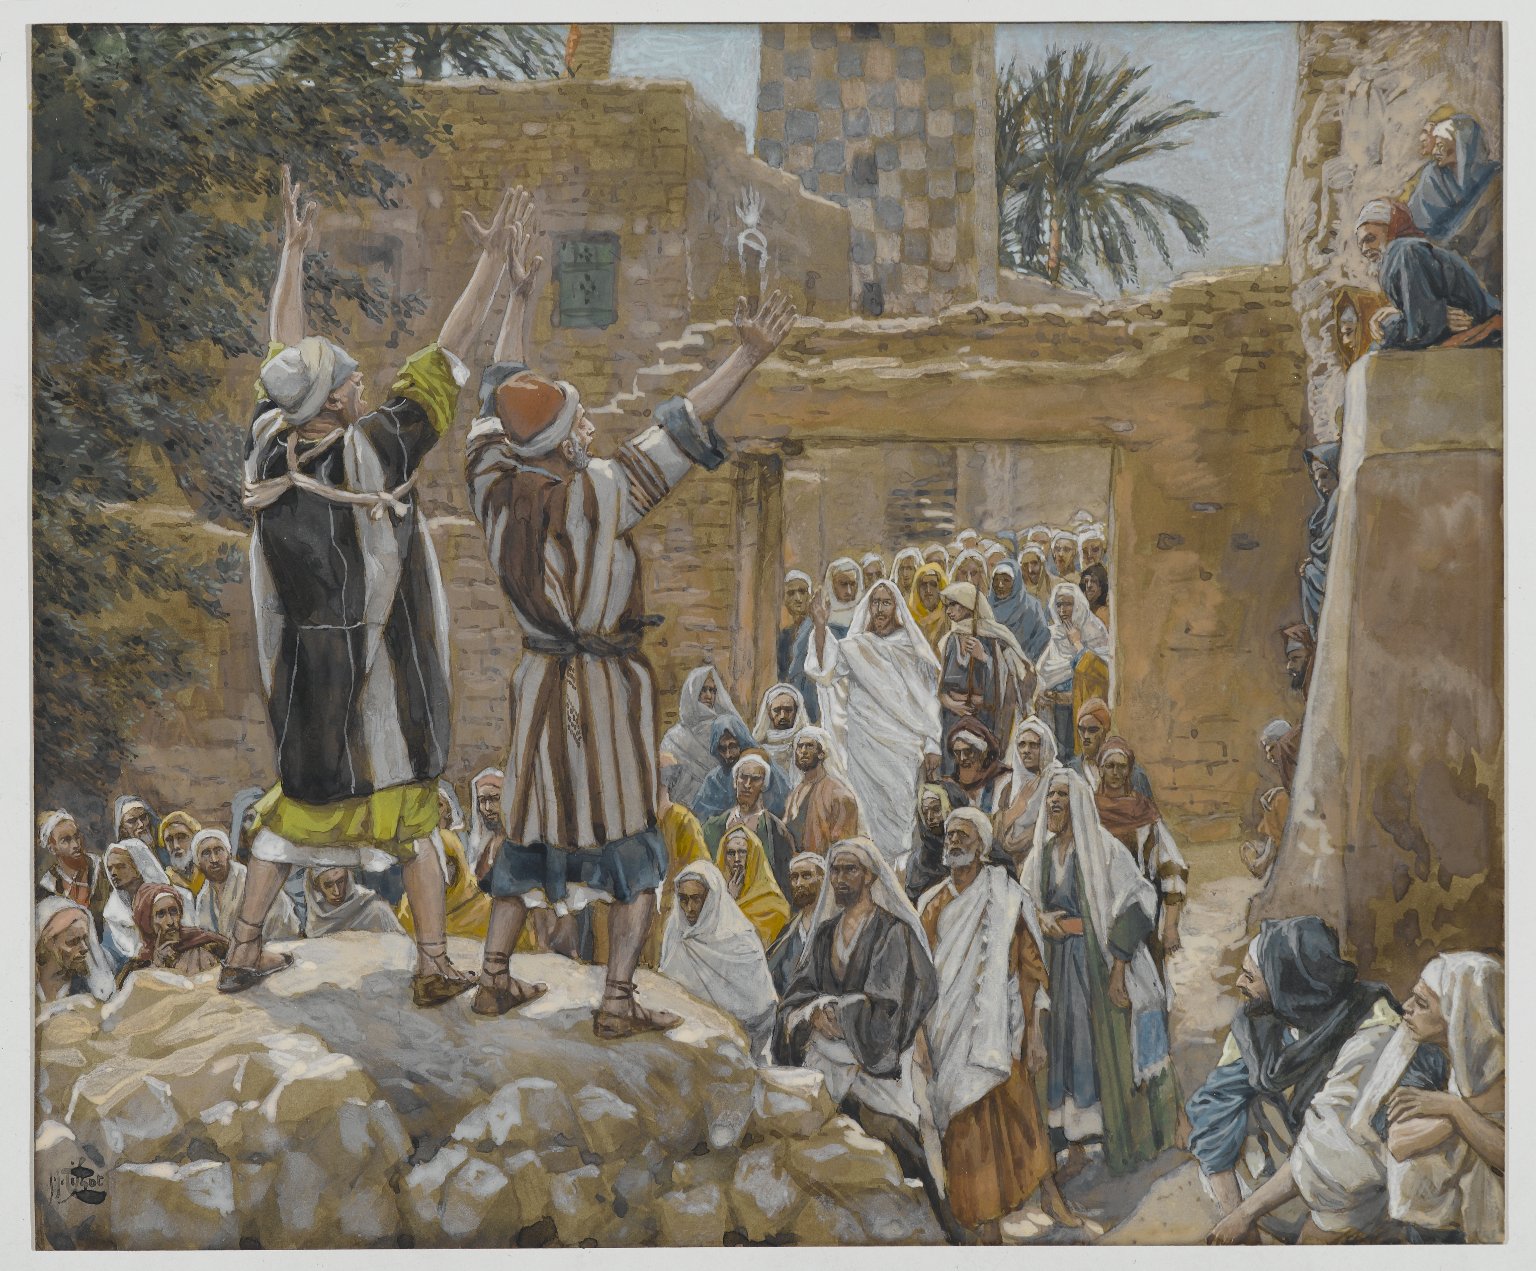 Hiệp sống Tin mừng: Chúa nhật 30 Thường niên năm B